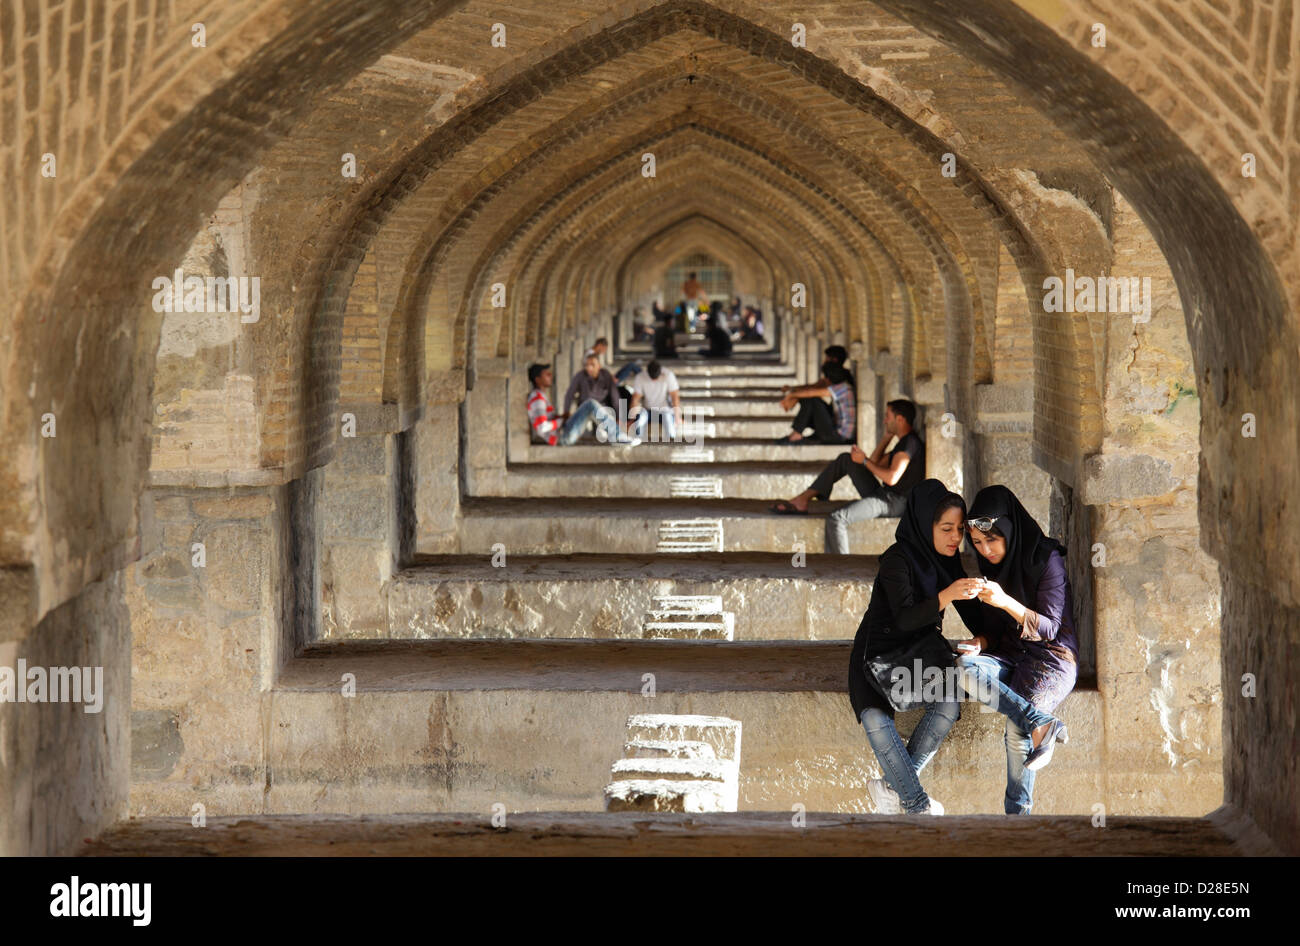 Arches de Si-O-se Pol, pont ou pont de 33 arches, Isfahan, Iran Banque D'Images